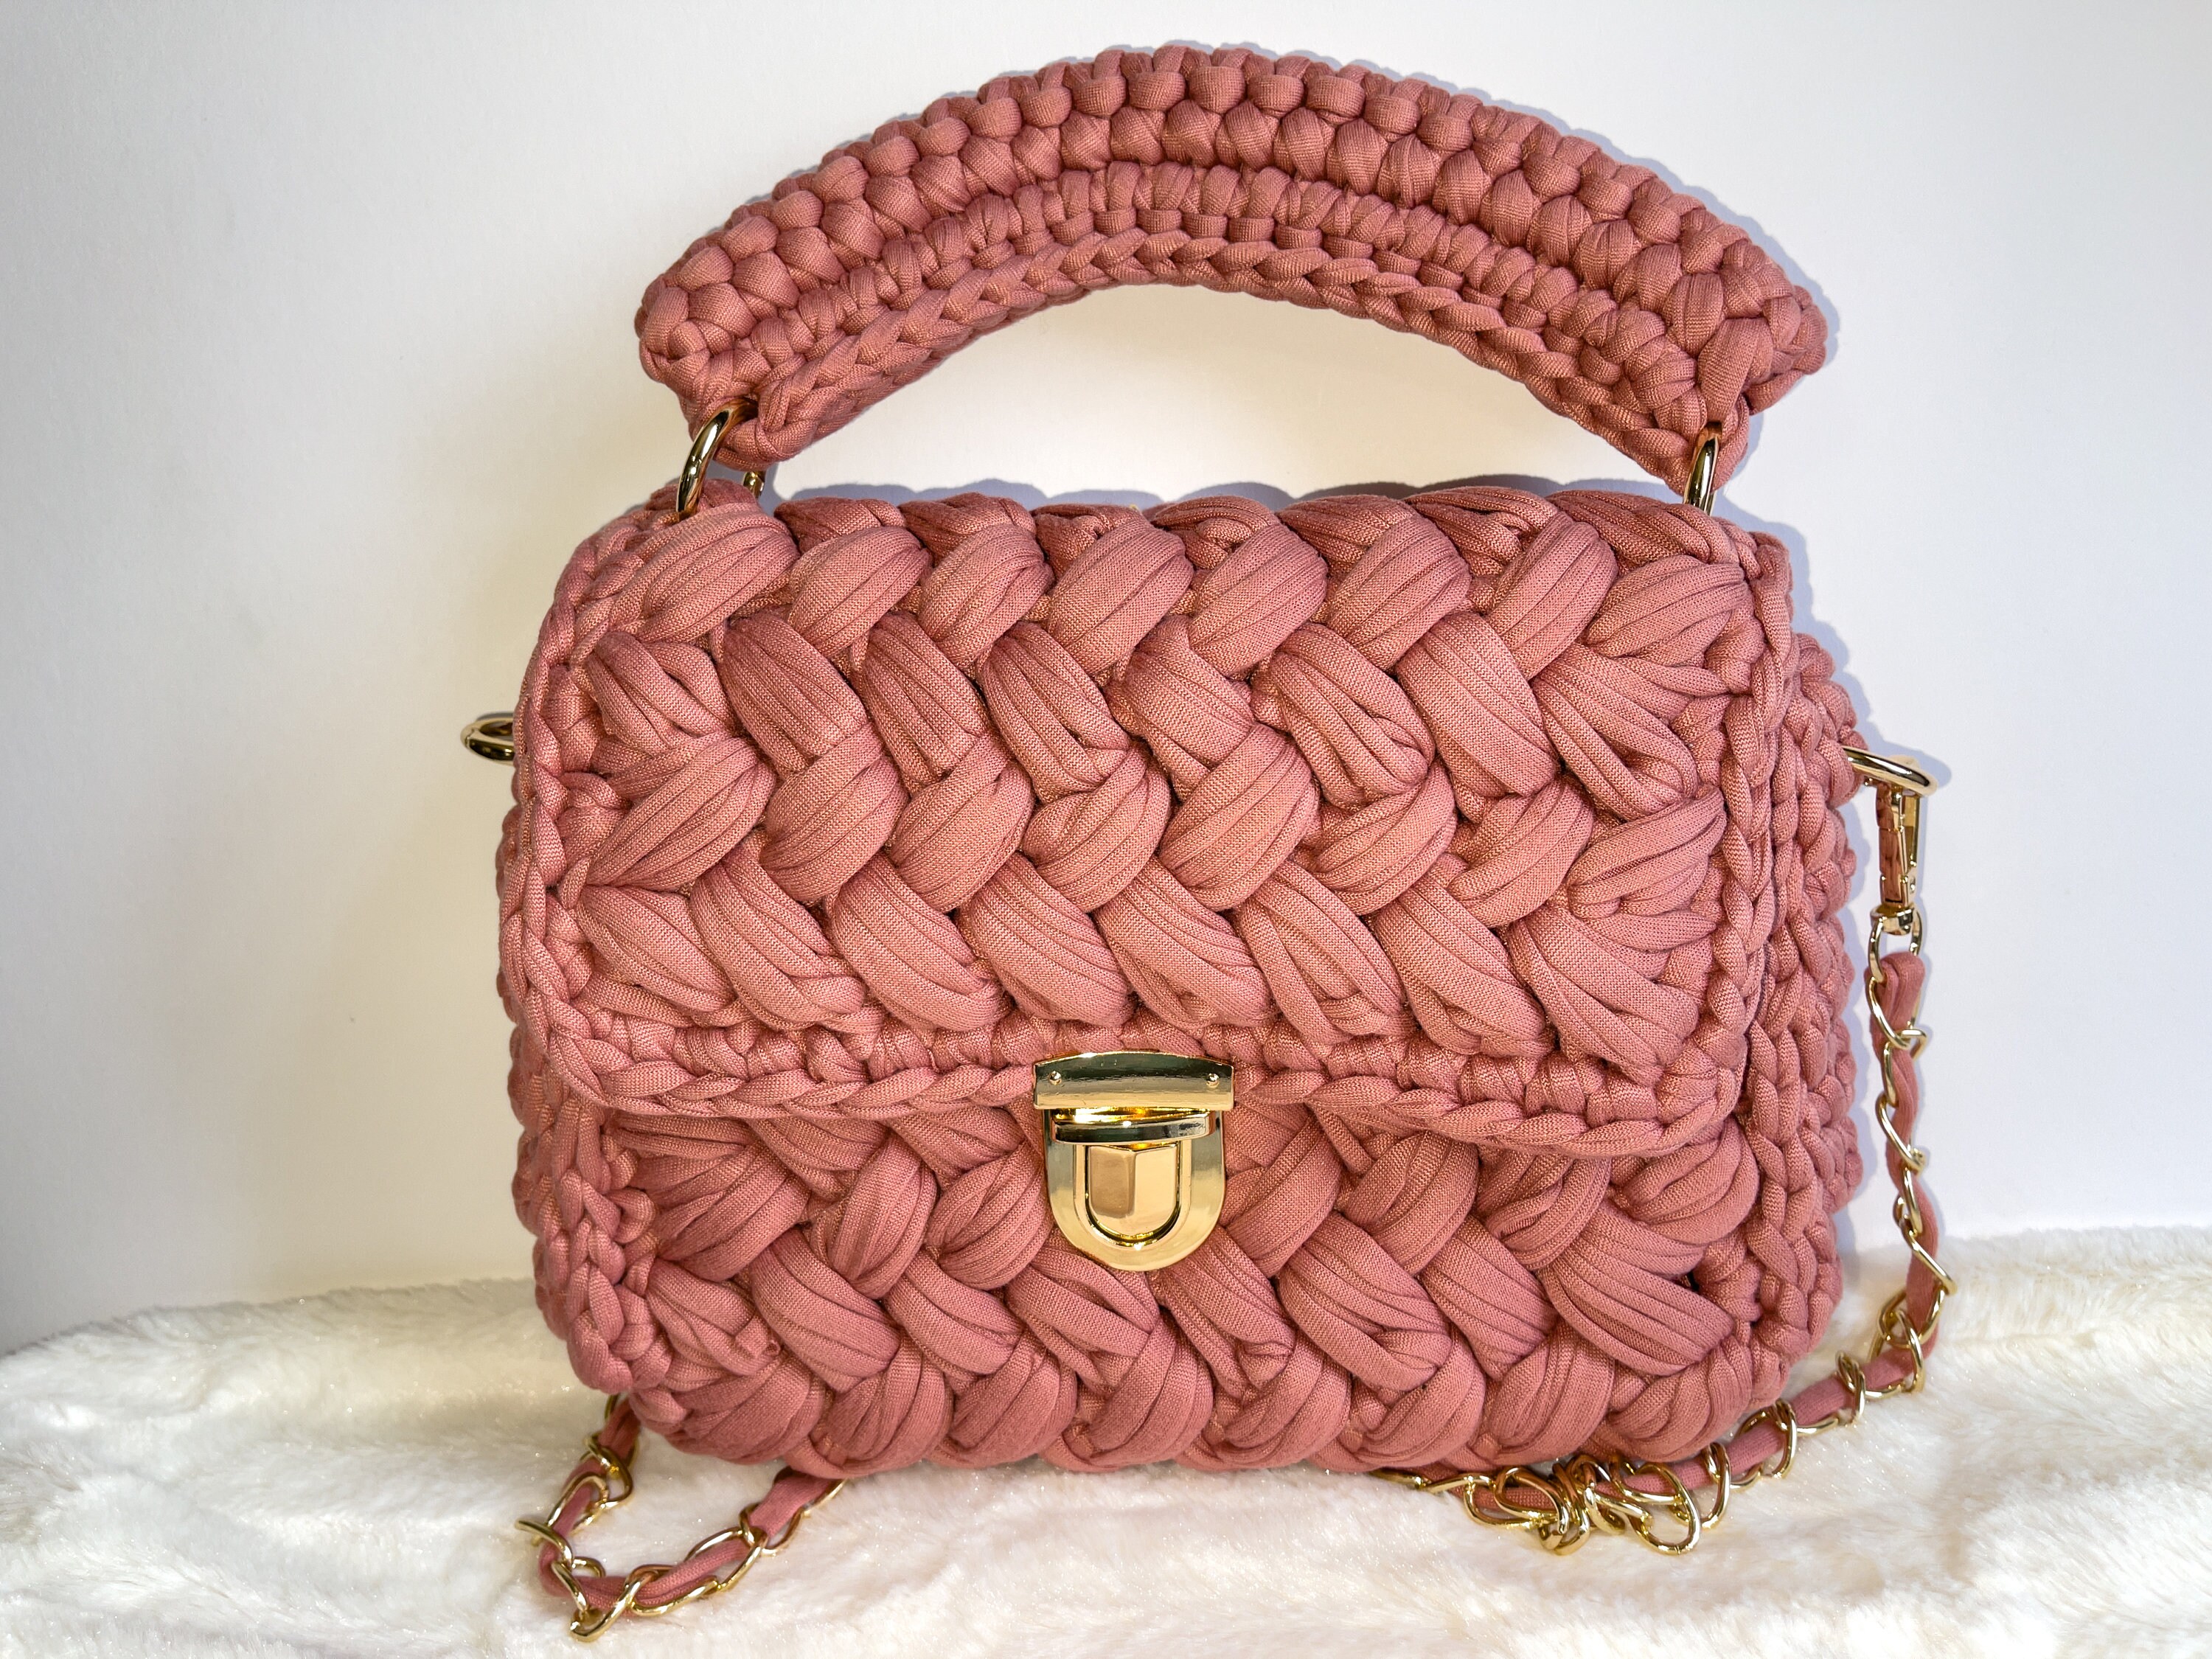 4-Piece Luxury Crochet Yarn Handbag